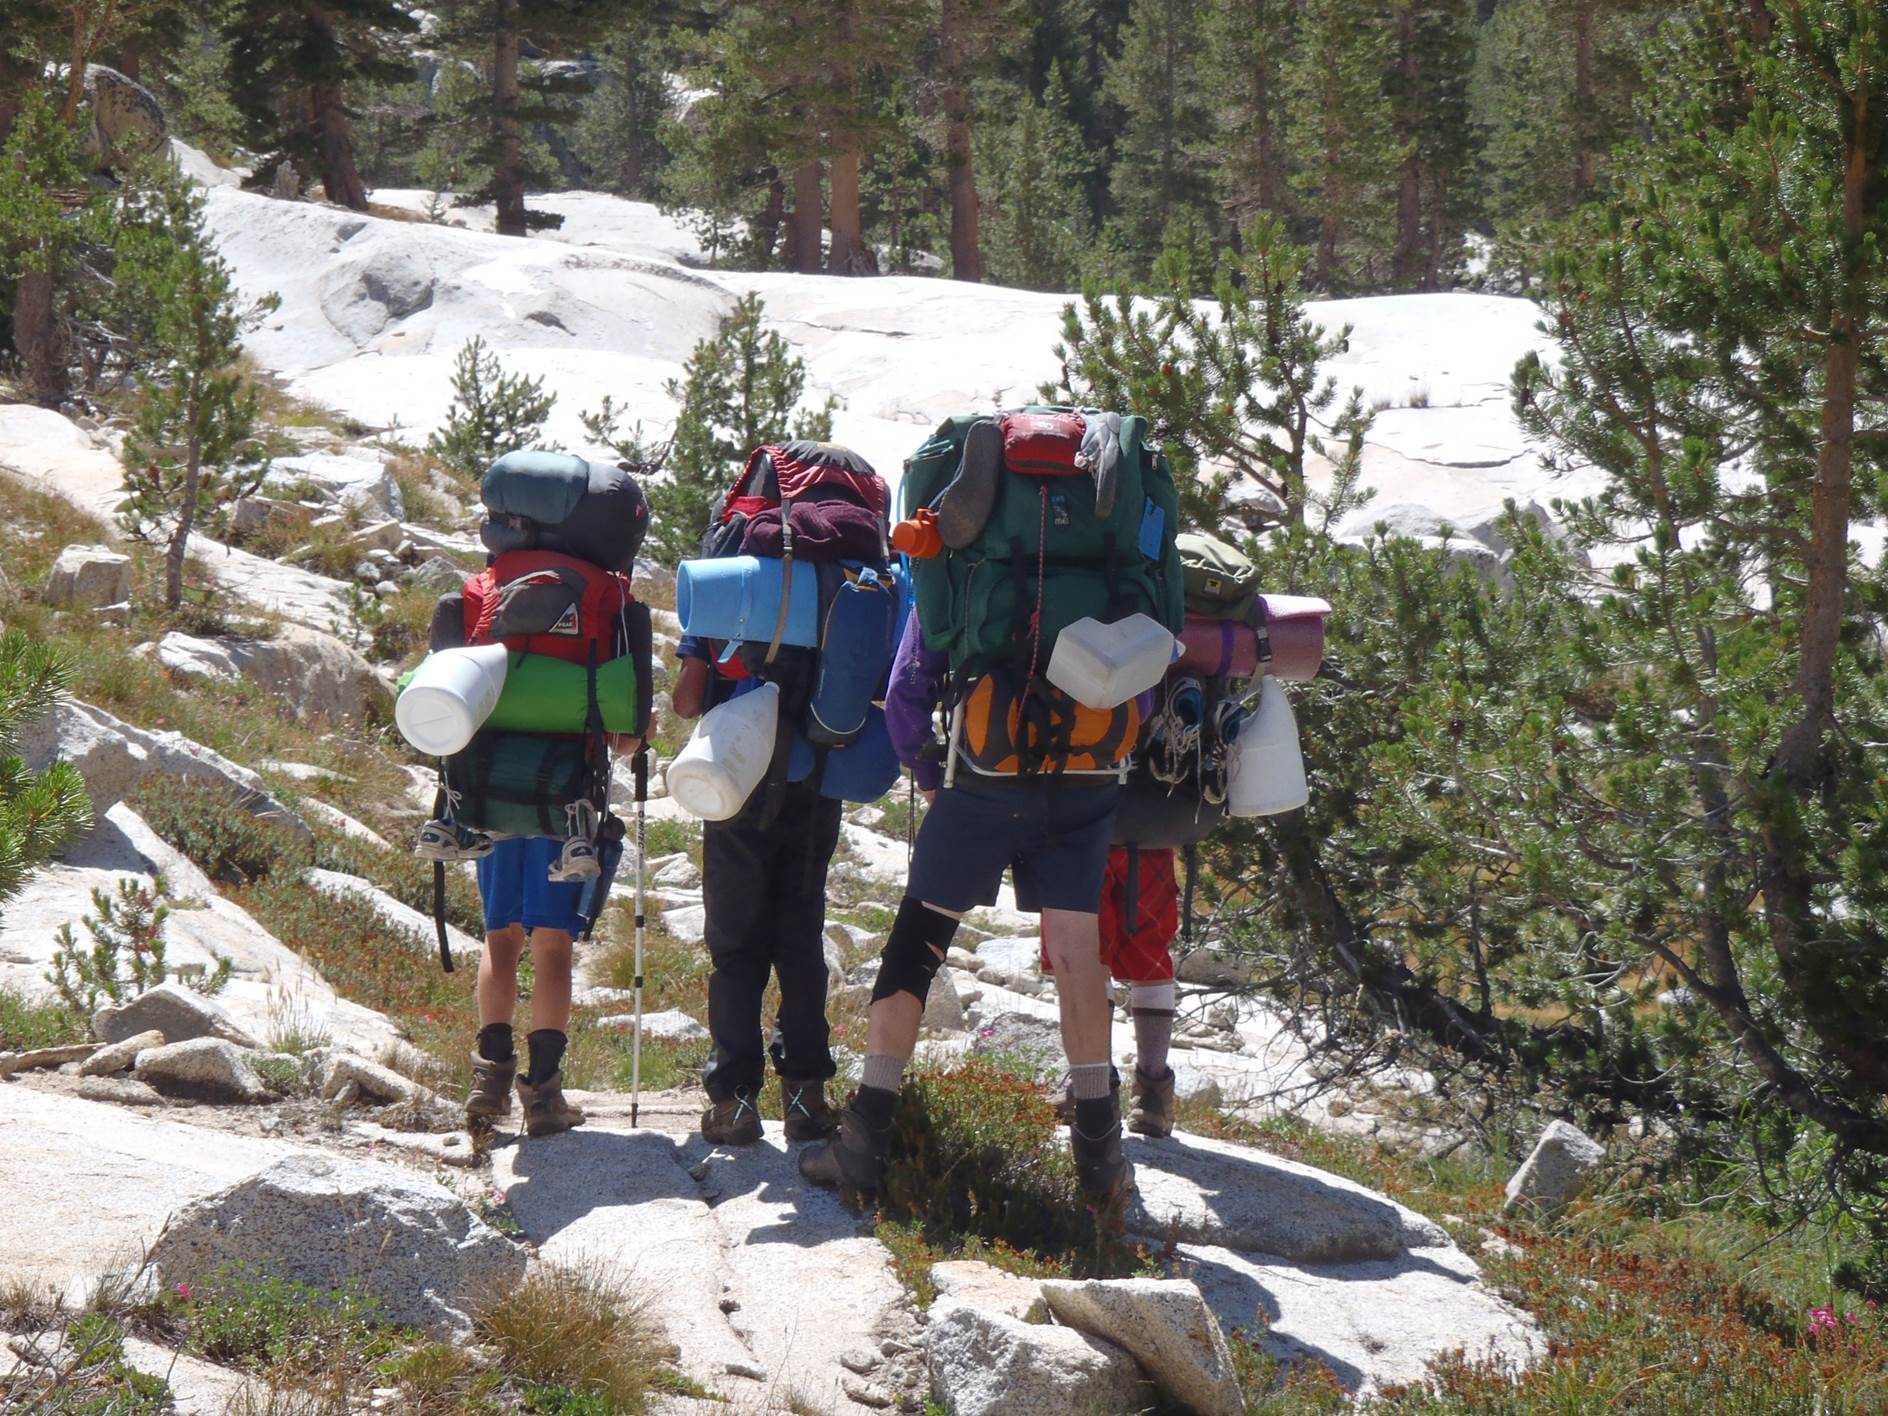 backpacking gear for trans-sierra trek to mt whitney